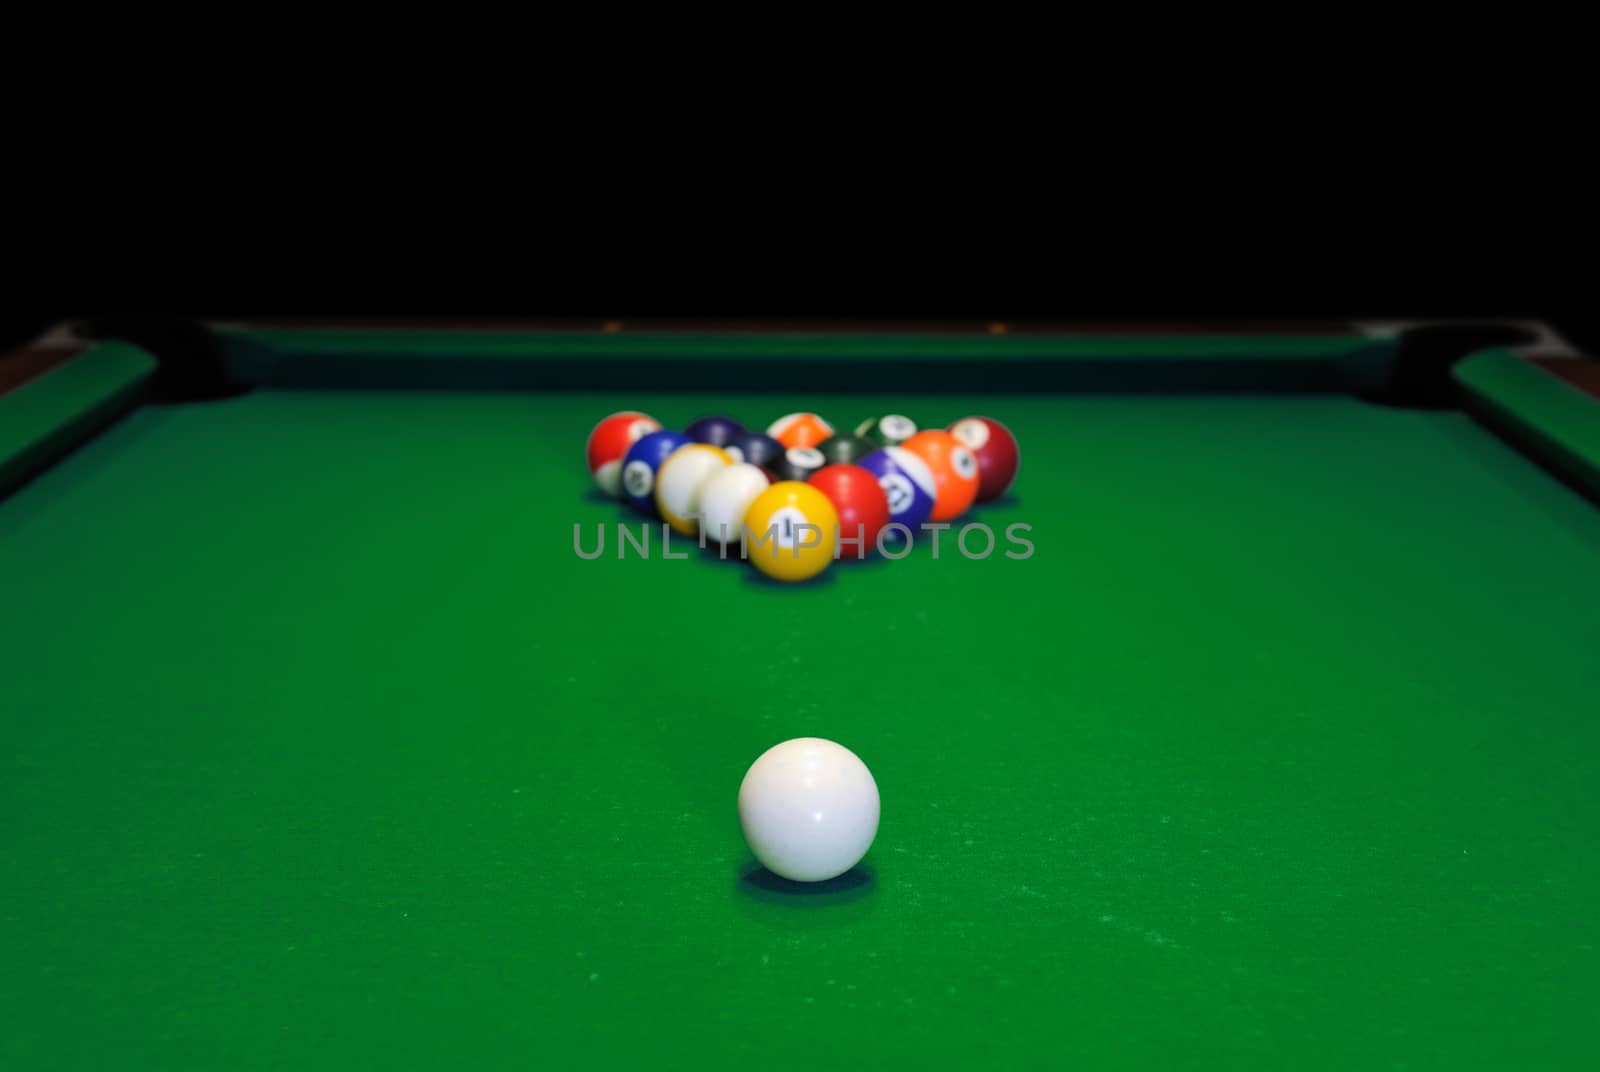 Billiard balls in a green pool table